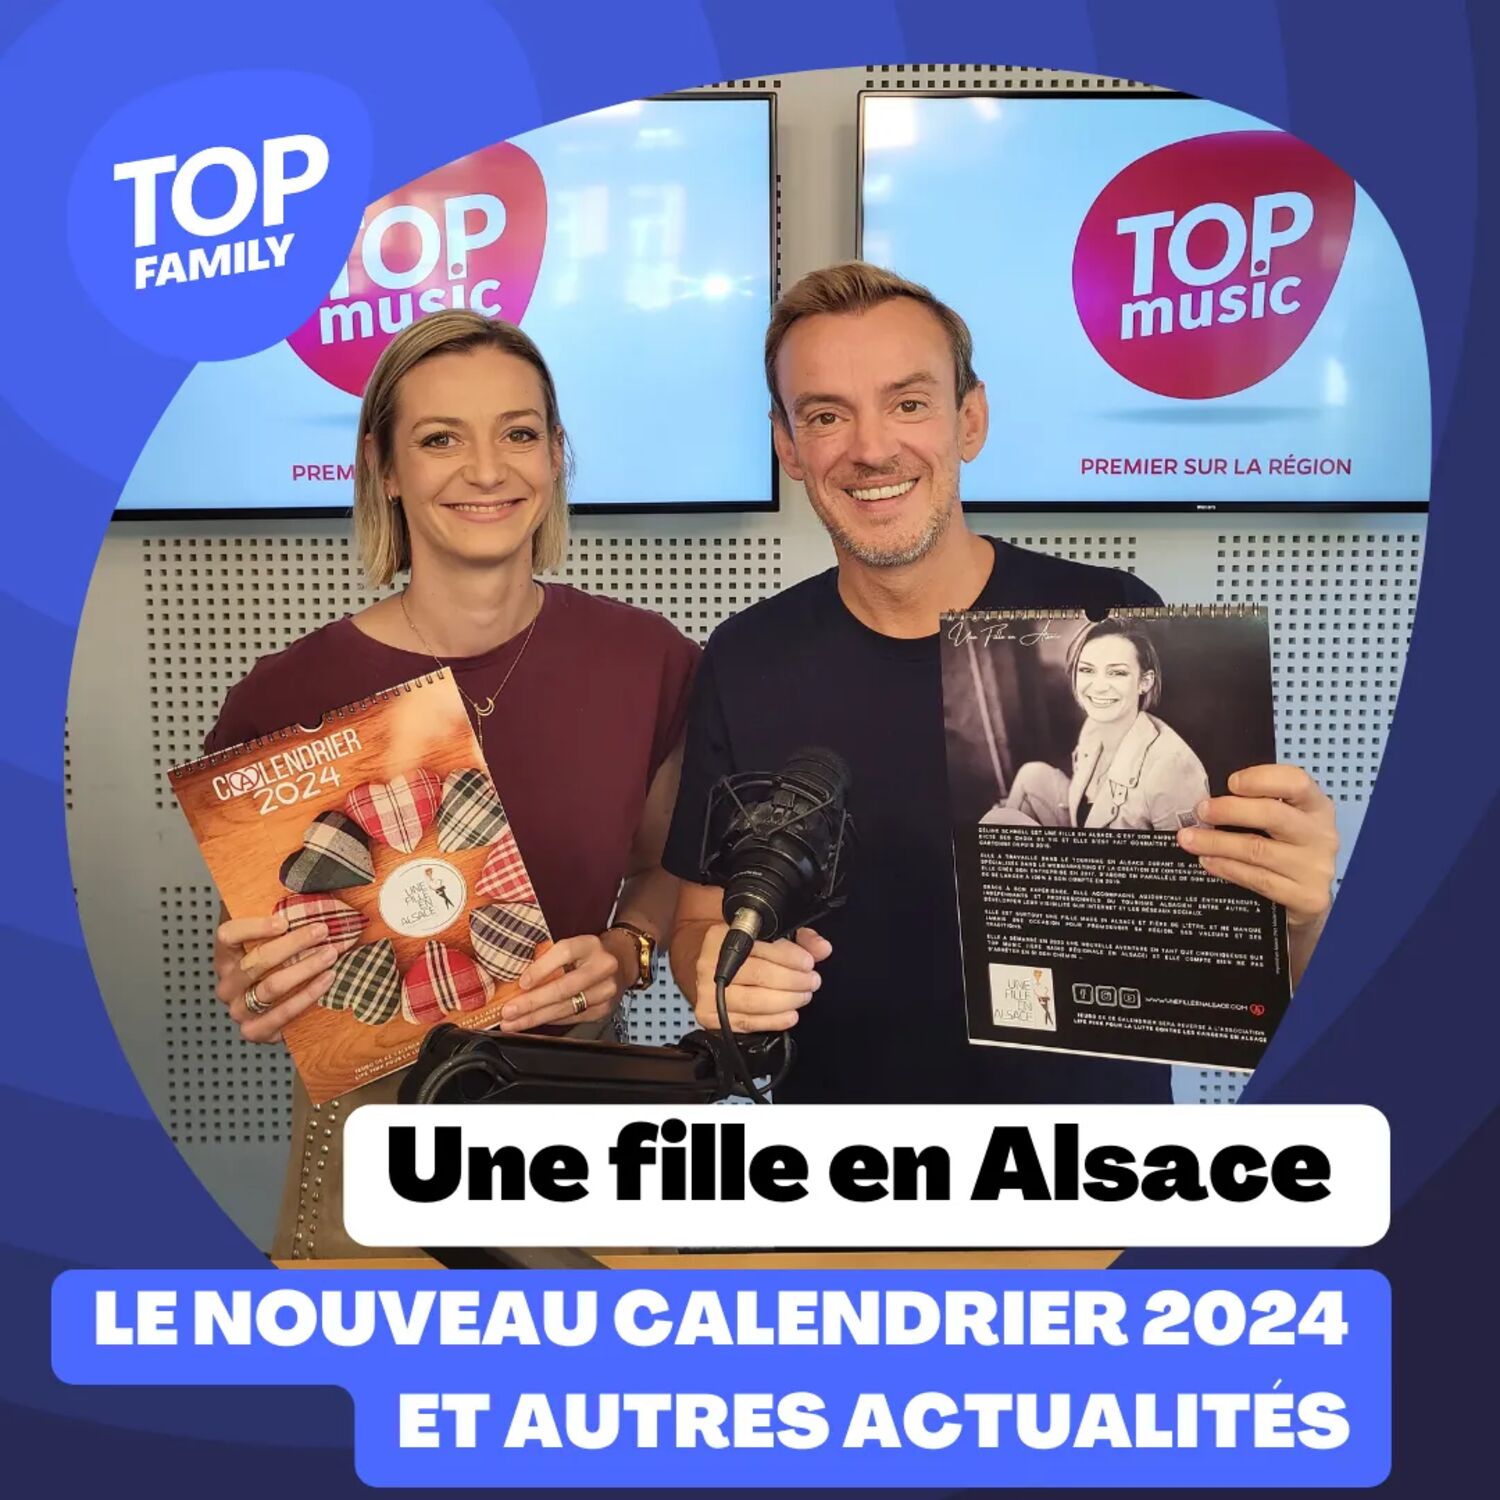 Top Family - Le nouveau calendrier 2024 de Céline, Une fille en Alsace